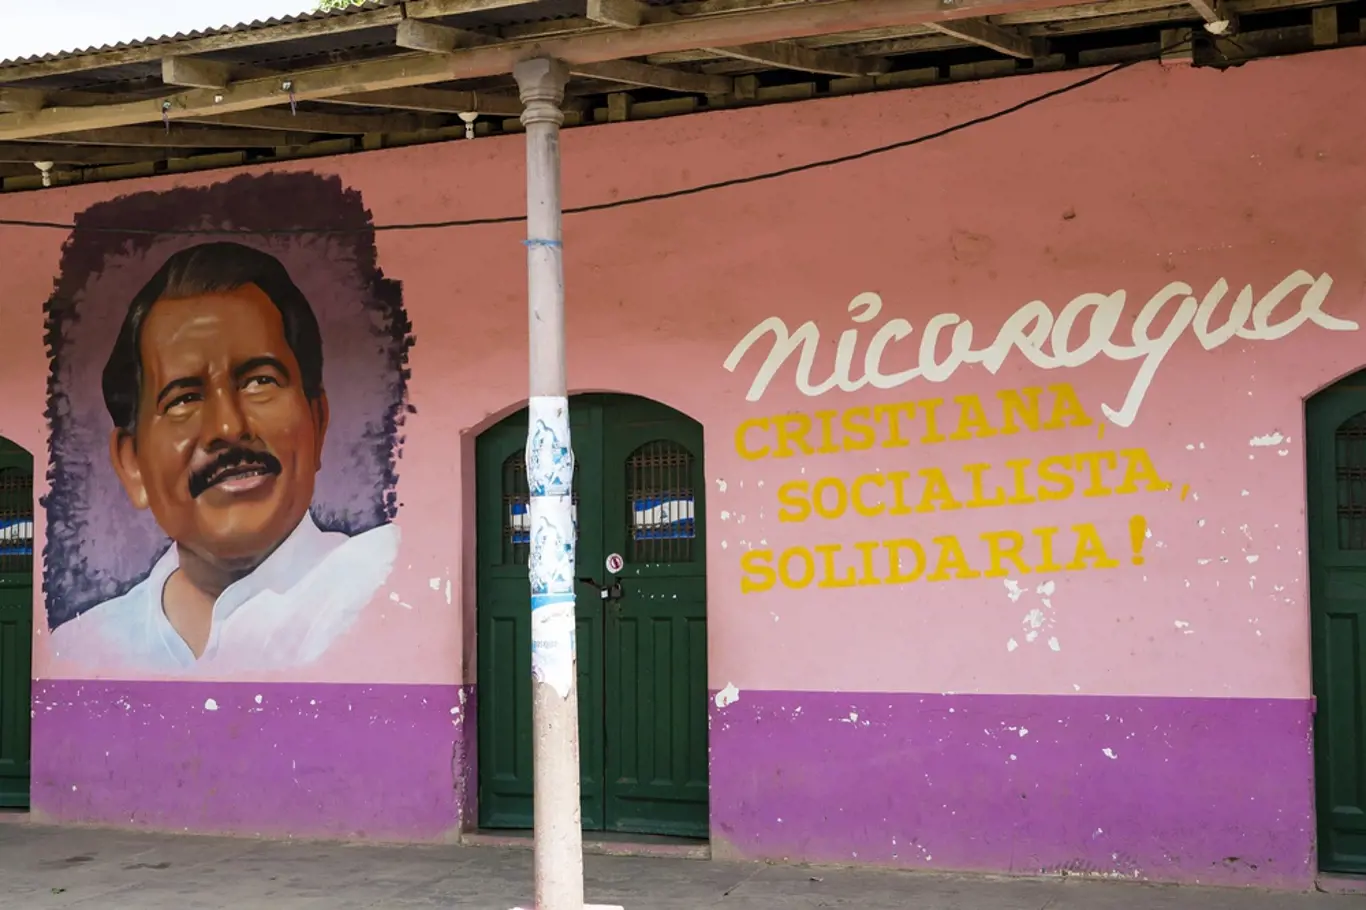 Prezident Daniel Ortega v podání místní lidové tvořivosti.